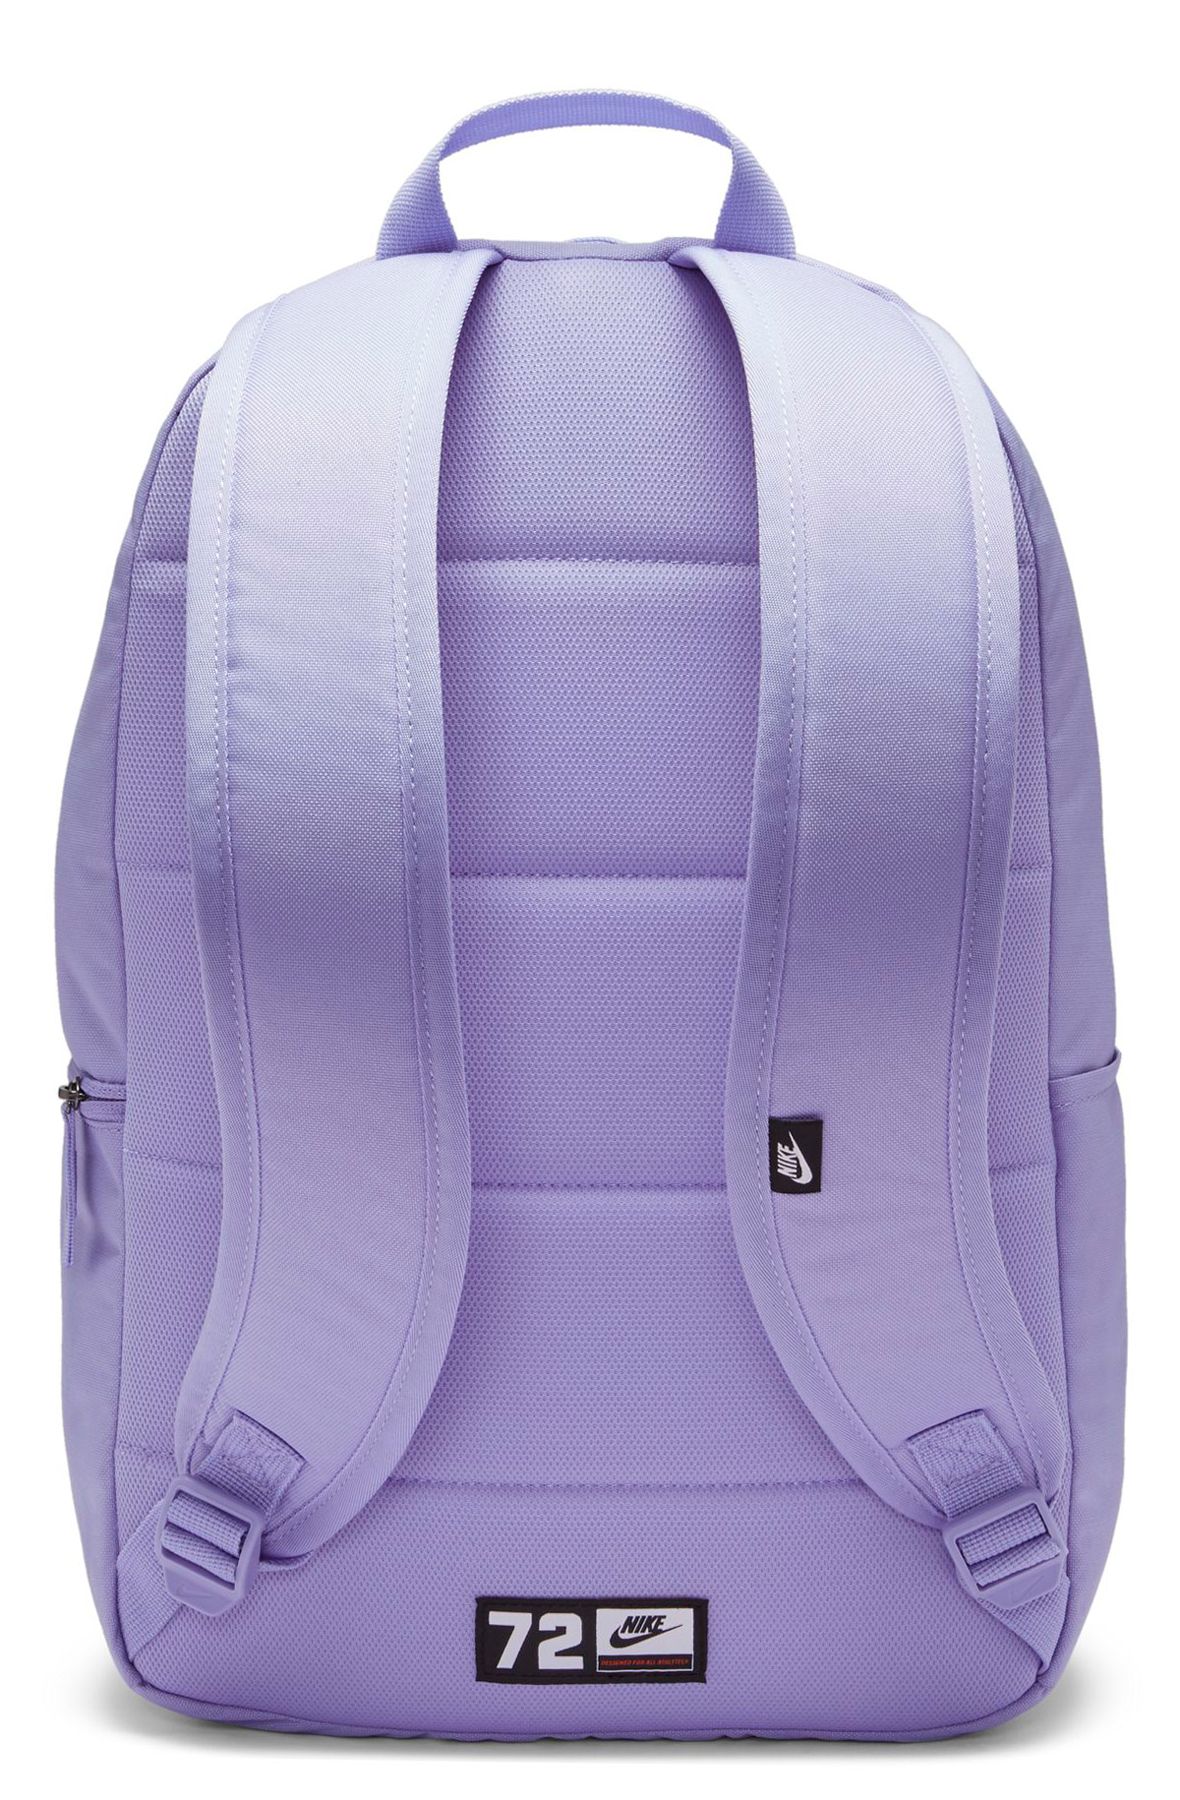 nike lavender backpack